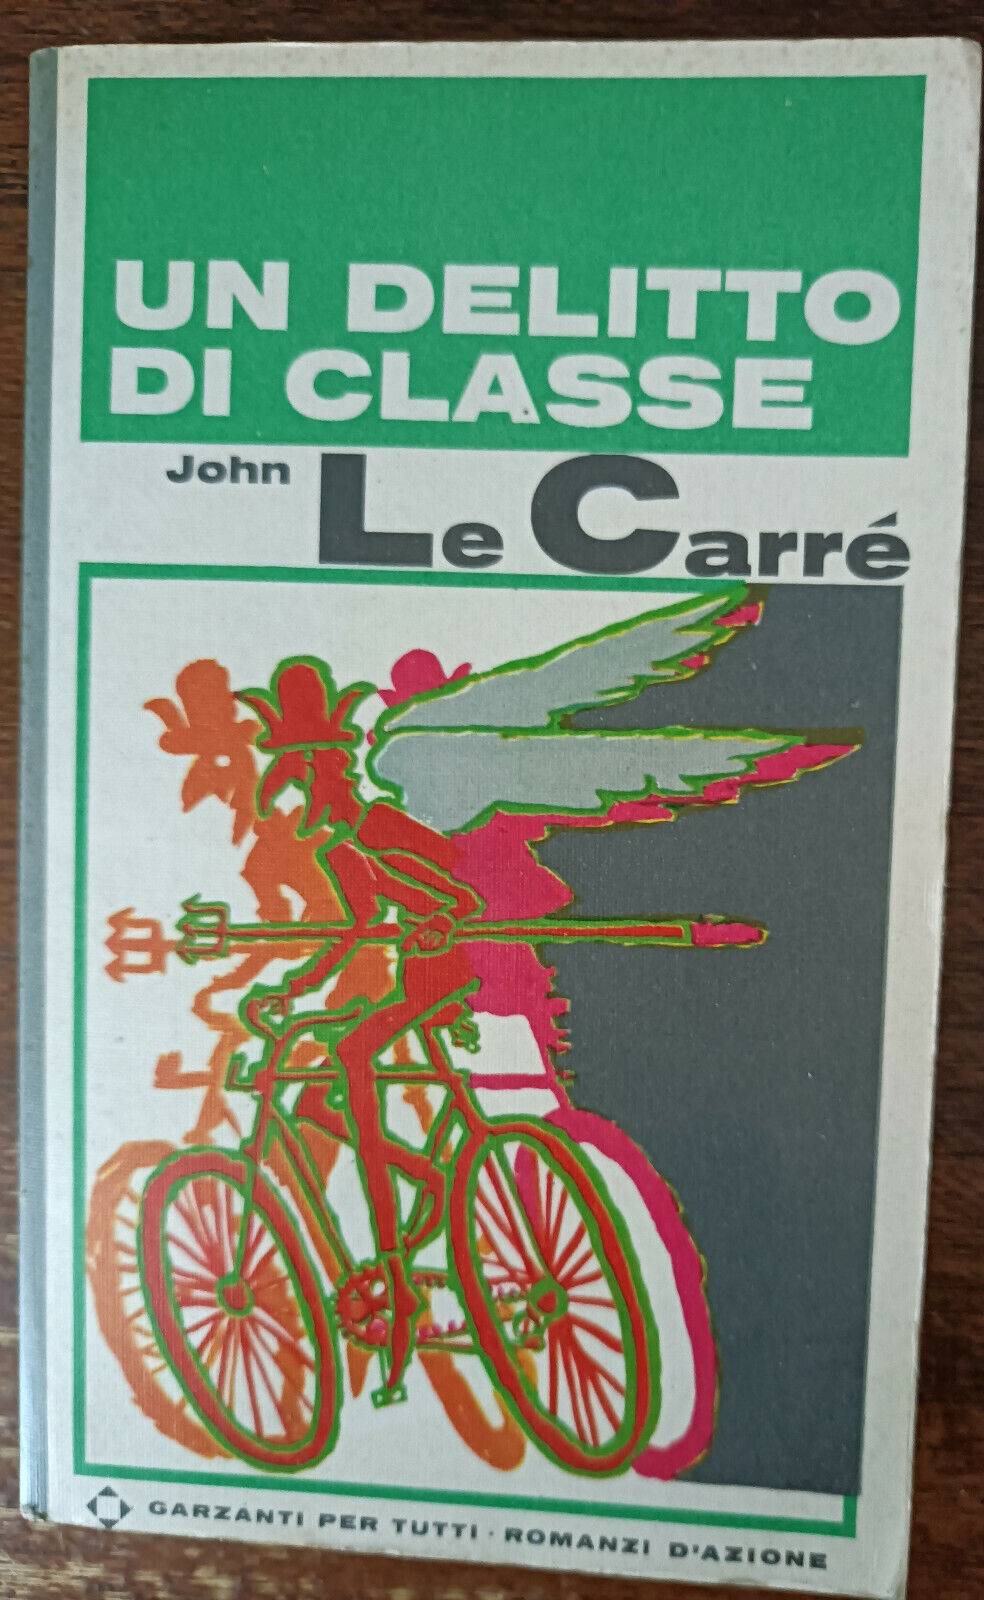 Un delitto di classe - John Le Carr? - Garzanti, 1967 - A